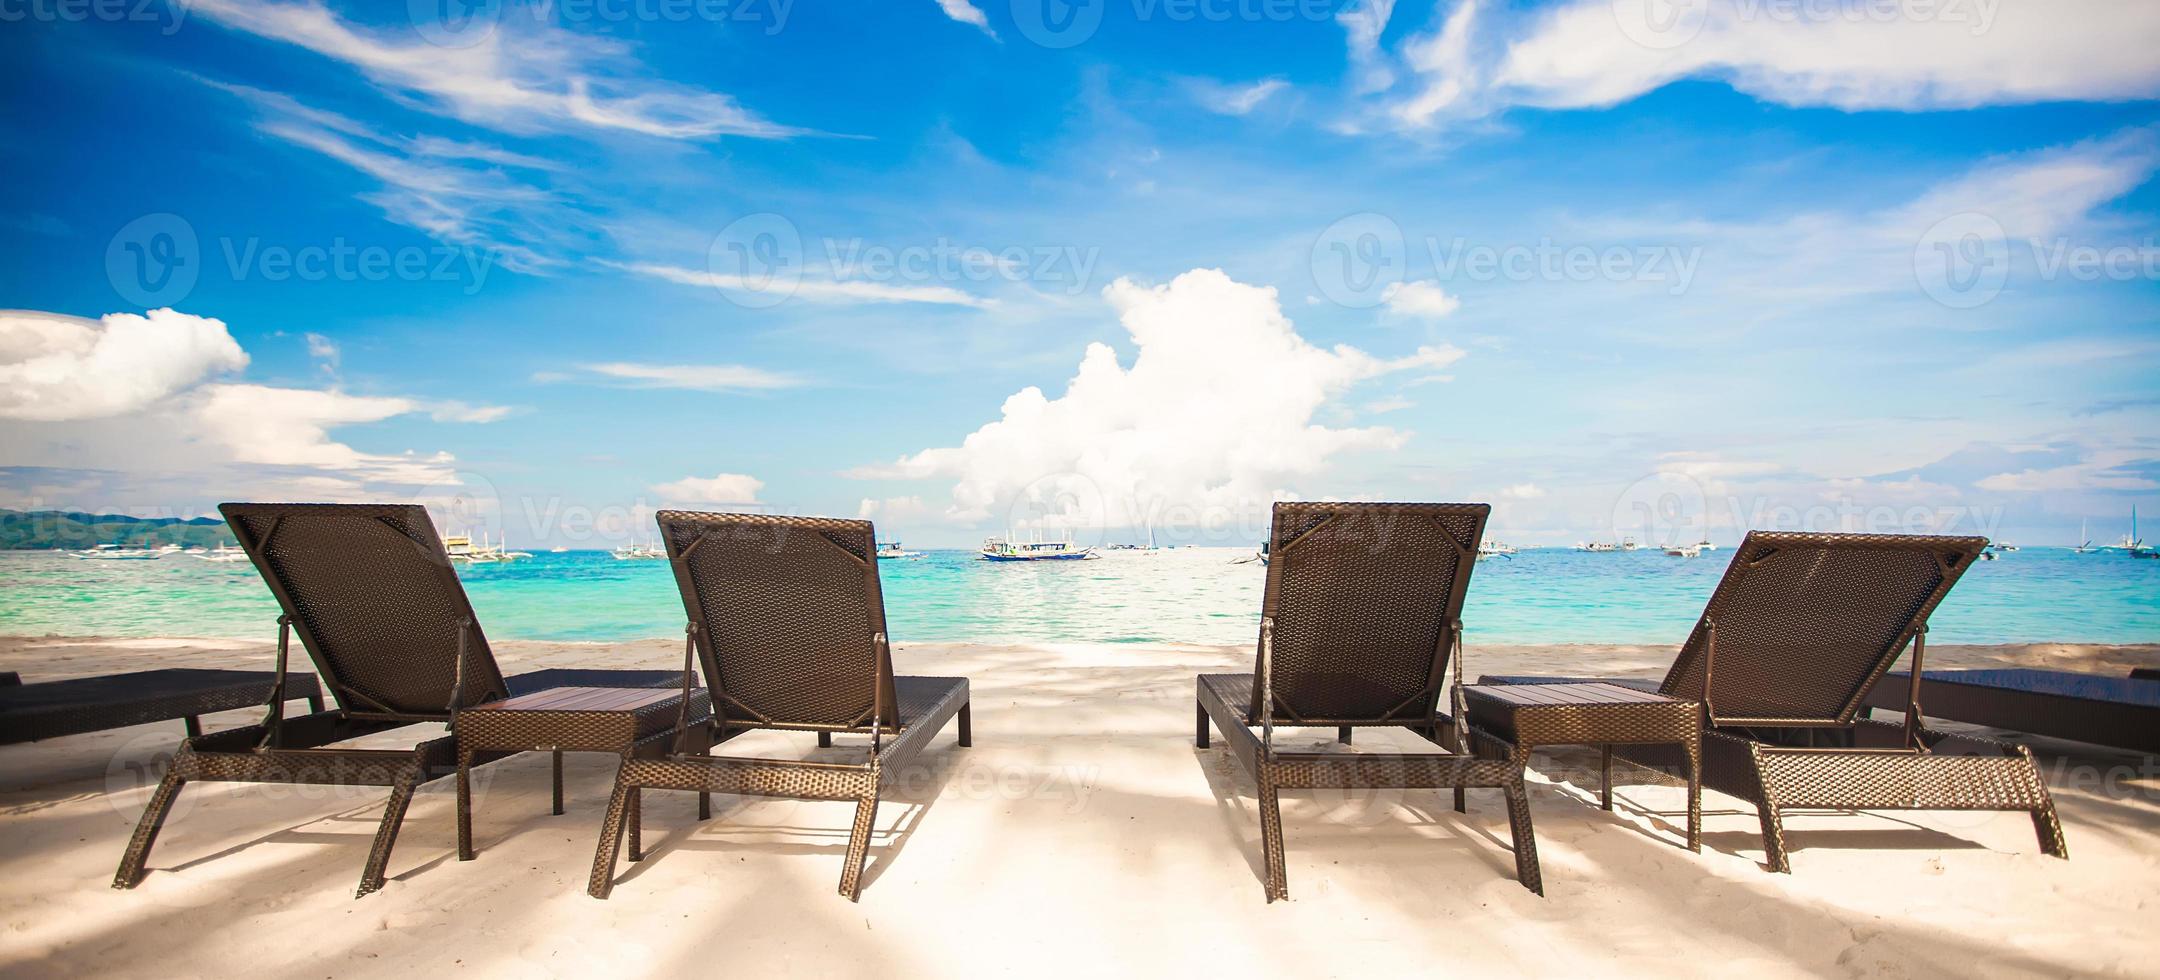 strand stolar i exotisk tillflykt på perfekt vit sandig strand foto